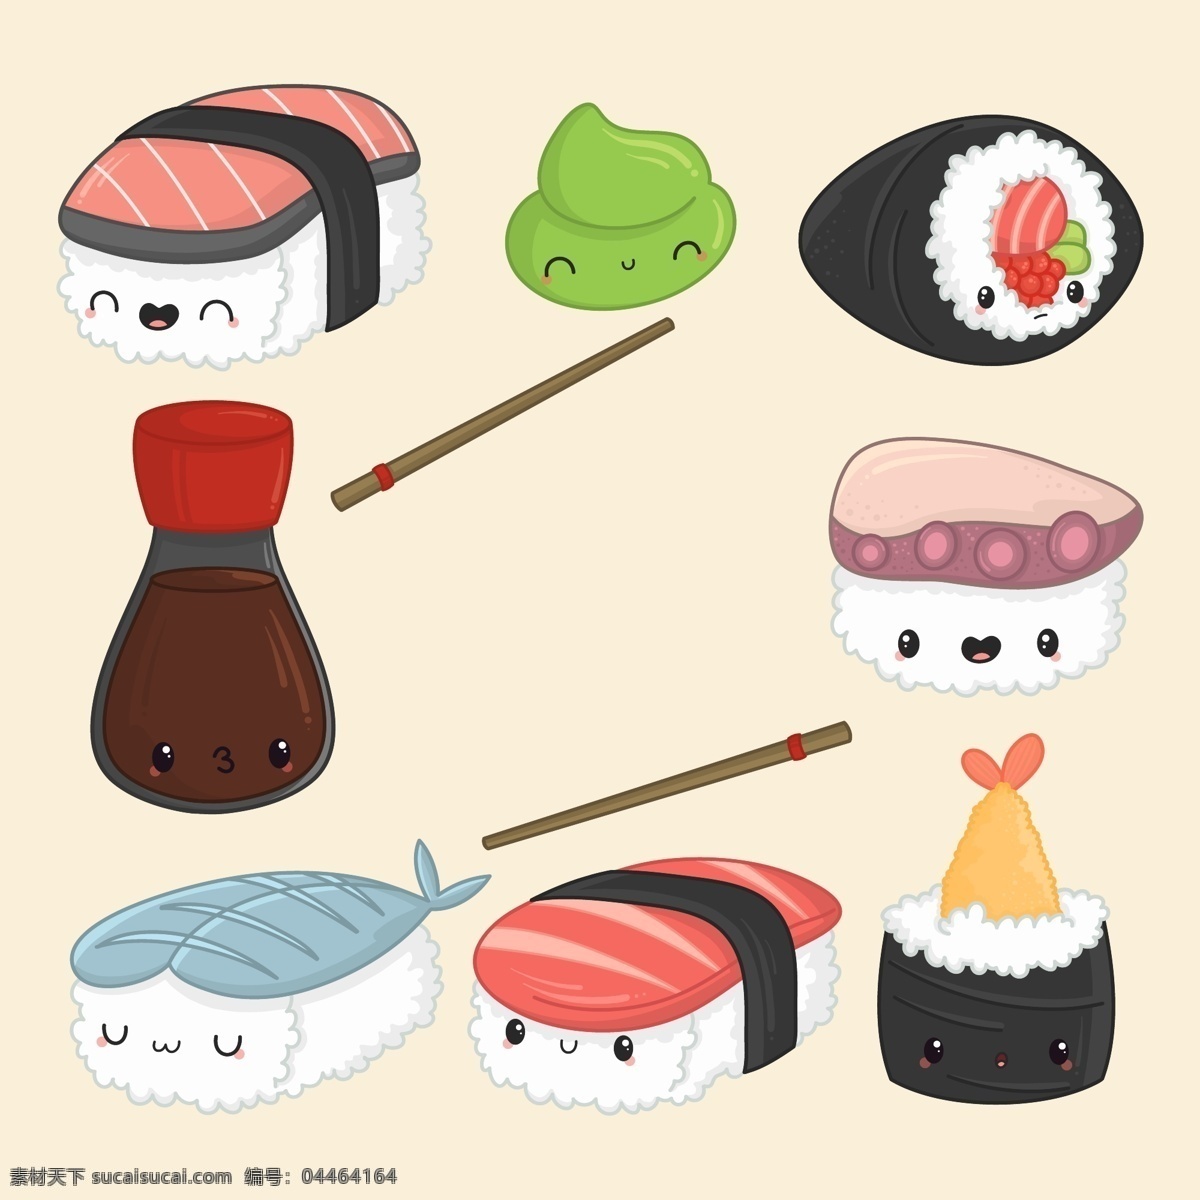 可爱寿司 可爱食物 卡哇伊食物 可爱美食 卡哇伊美食 卡通美食 美食表情 ai设计素材 ai矢量图